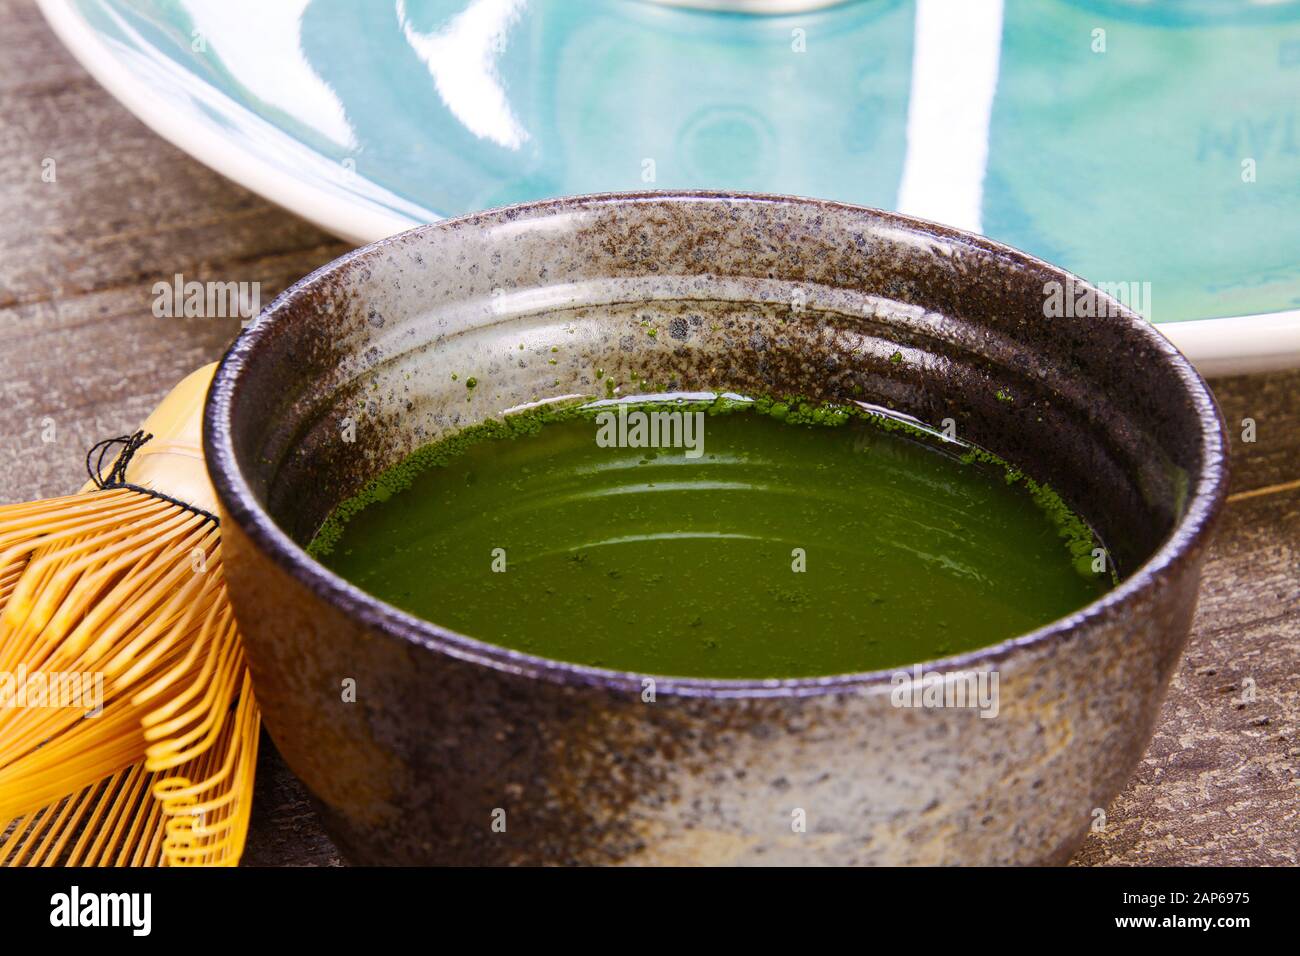 Concept de préparation de thé Matcha : gros plan d'un set isolé pour préparer du thé Matcha vert : un fouet en bambou et une cuillère, un bol en céramique sur une table en bois ancienne Banque D'Images